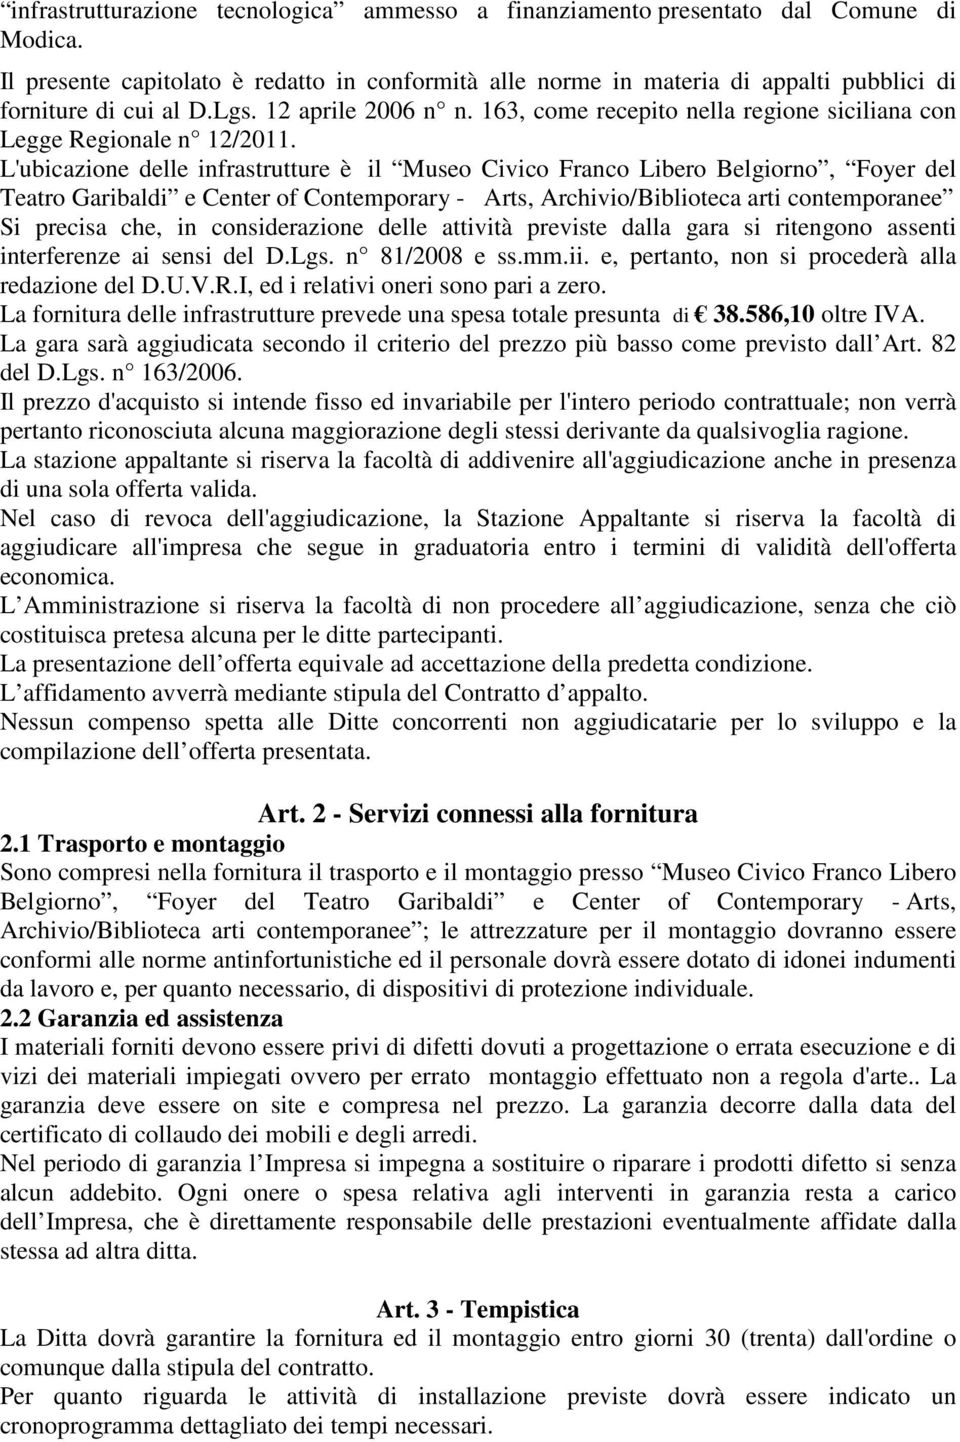 163, come recepito nella regione siciliana con Legge Regionale n 12/2011.